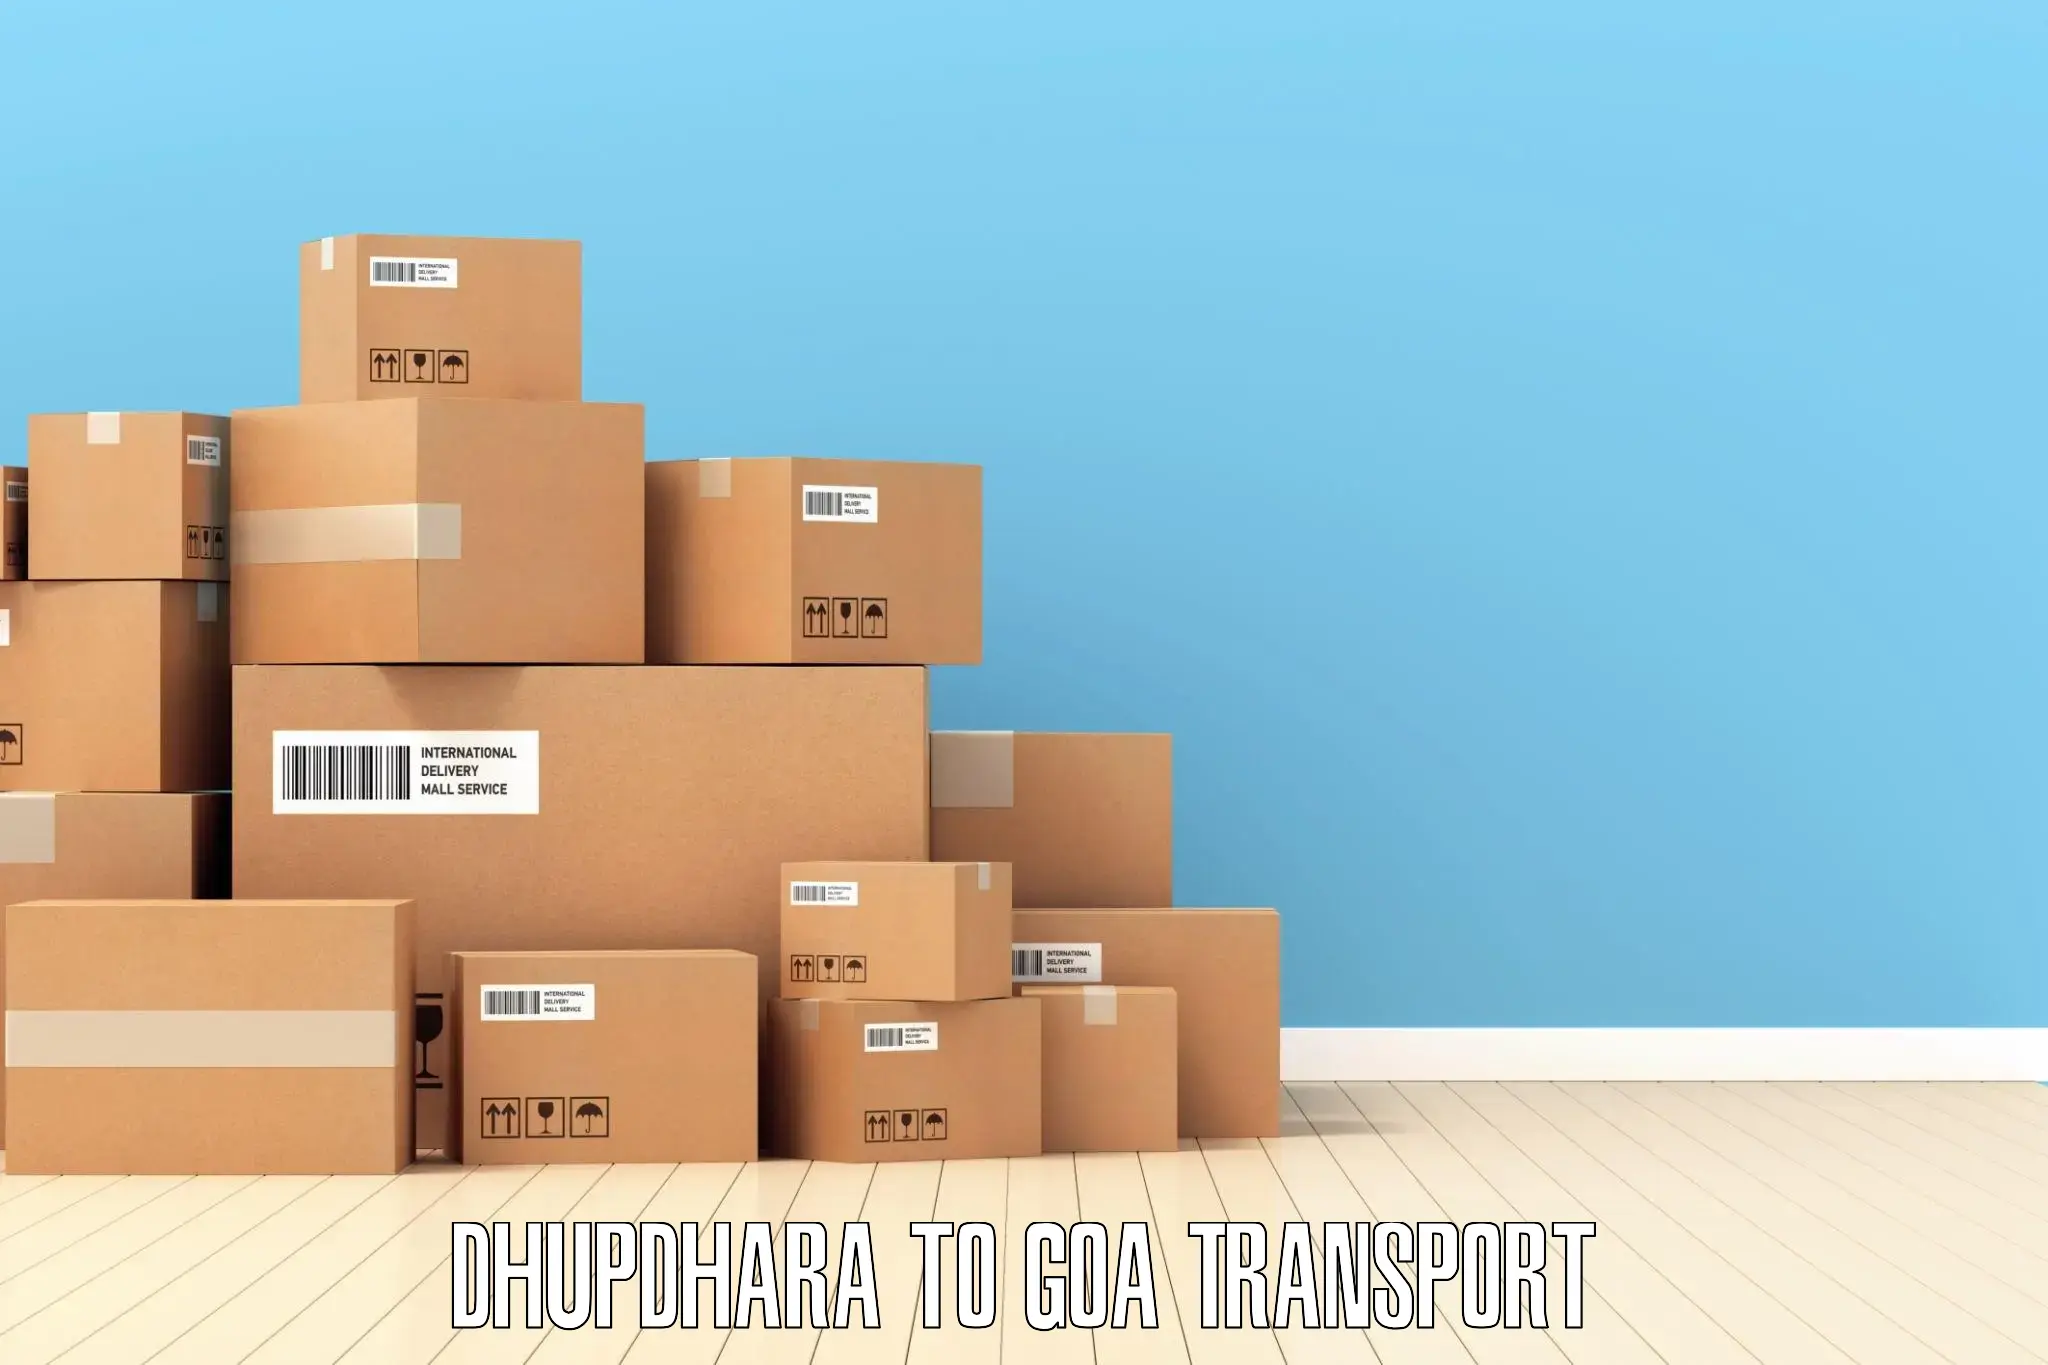 Interstate transport services Dhupdhara to Panjim